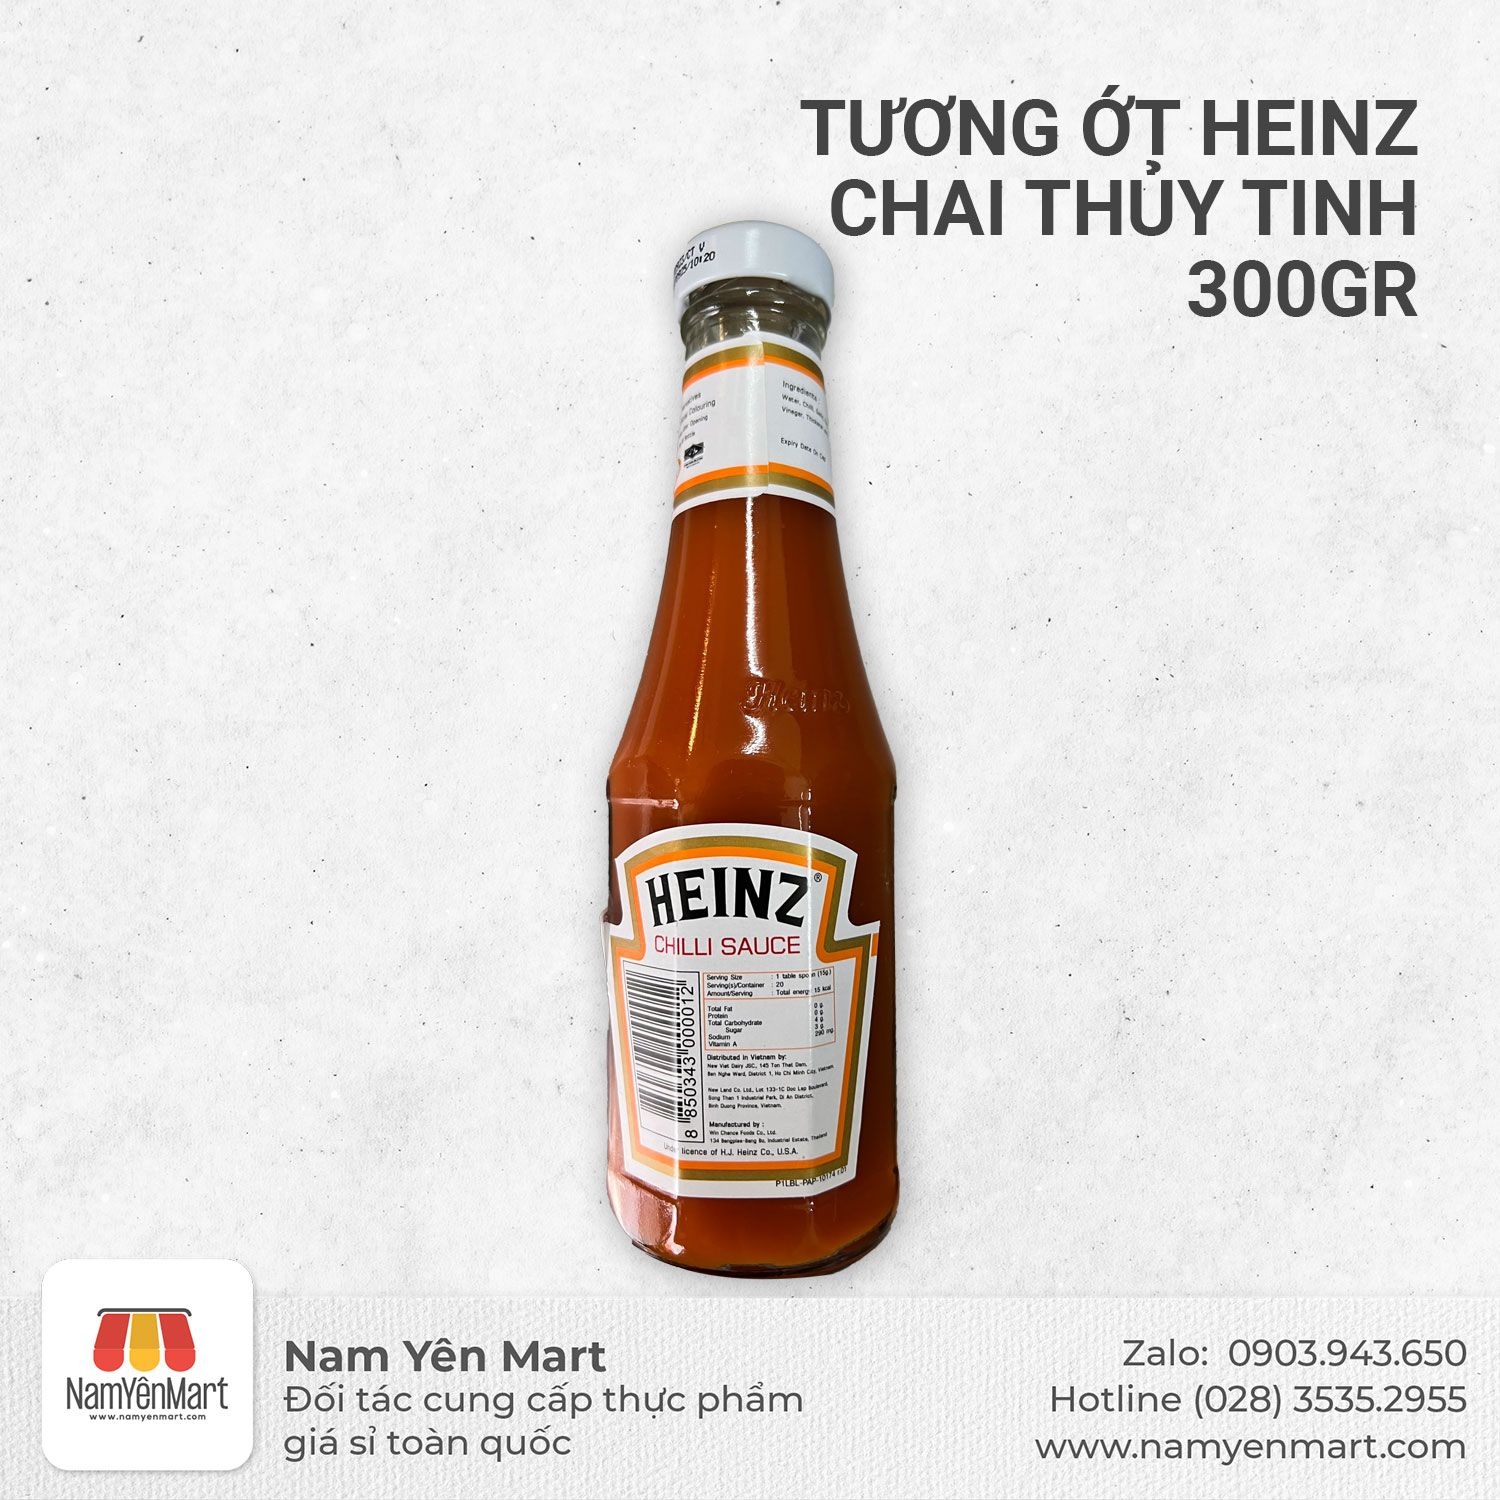  Tương ớt Heinz chai thủy tinh 300gr 